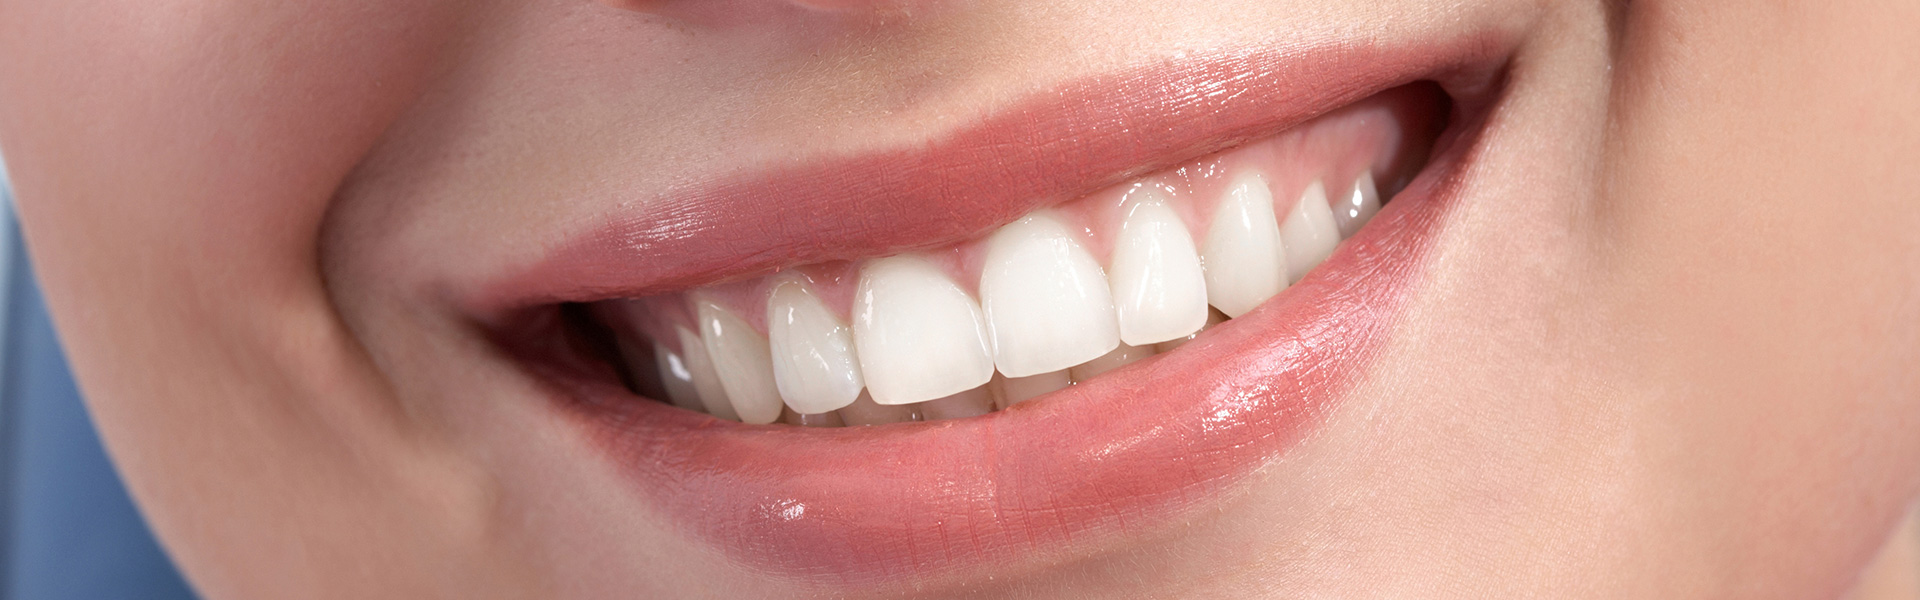 Dentist near Auburn Hills MI keeps your teeth and gums healthy, injury-free